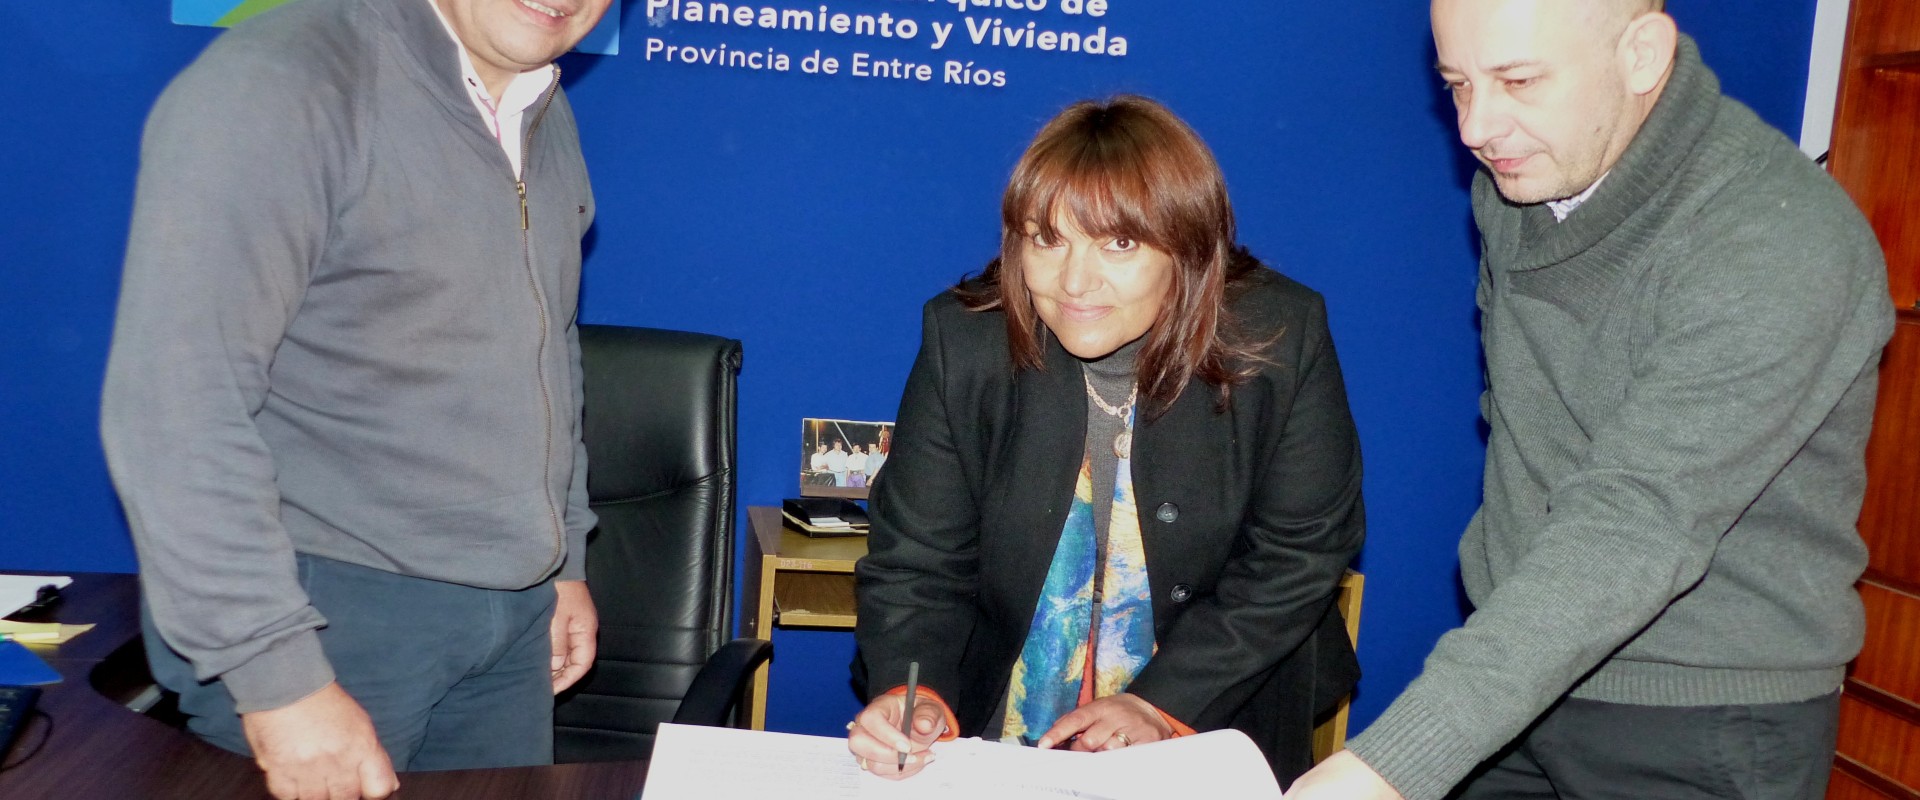 Se suman nuevas viviendas para San José de Feliciano financiadas por la provincia